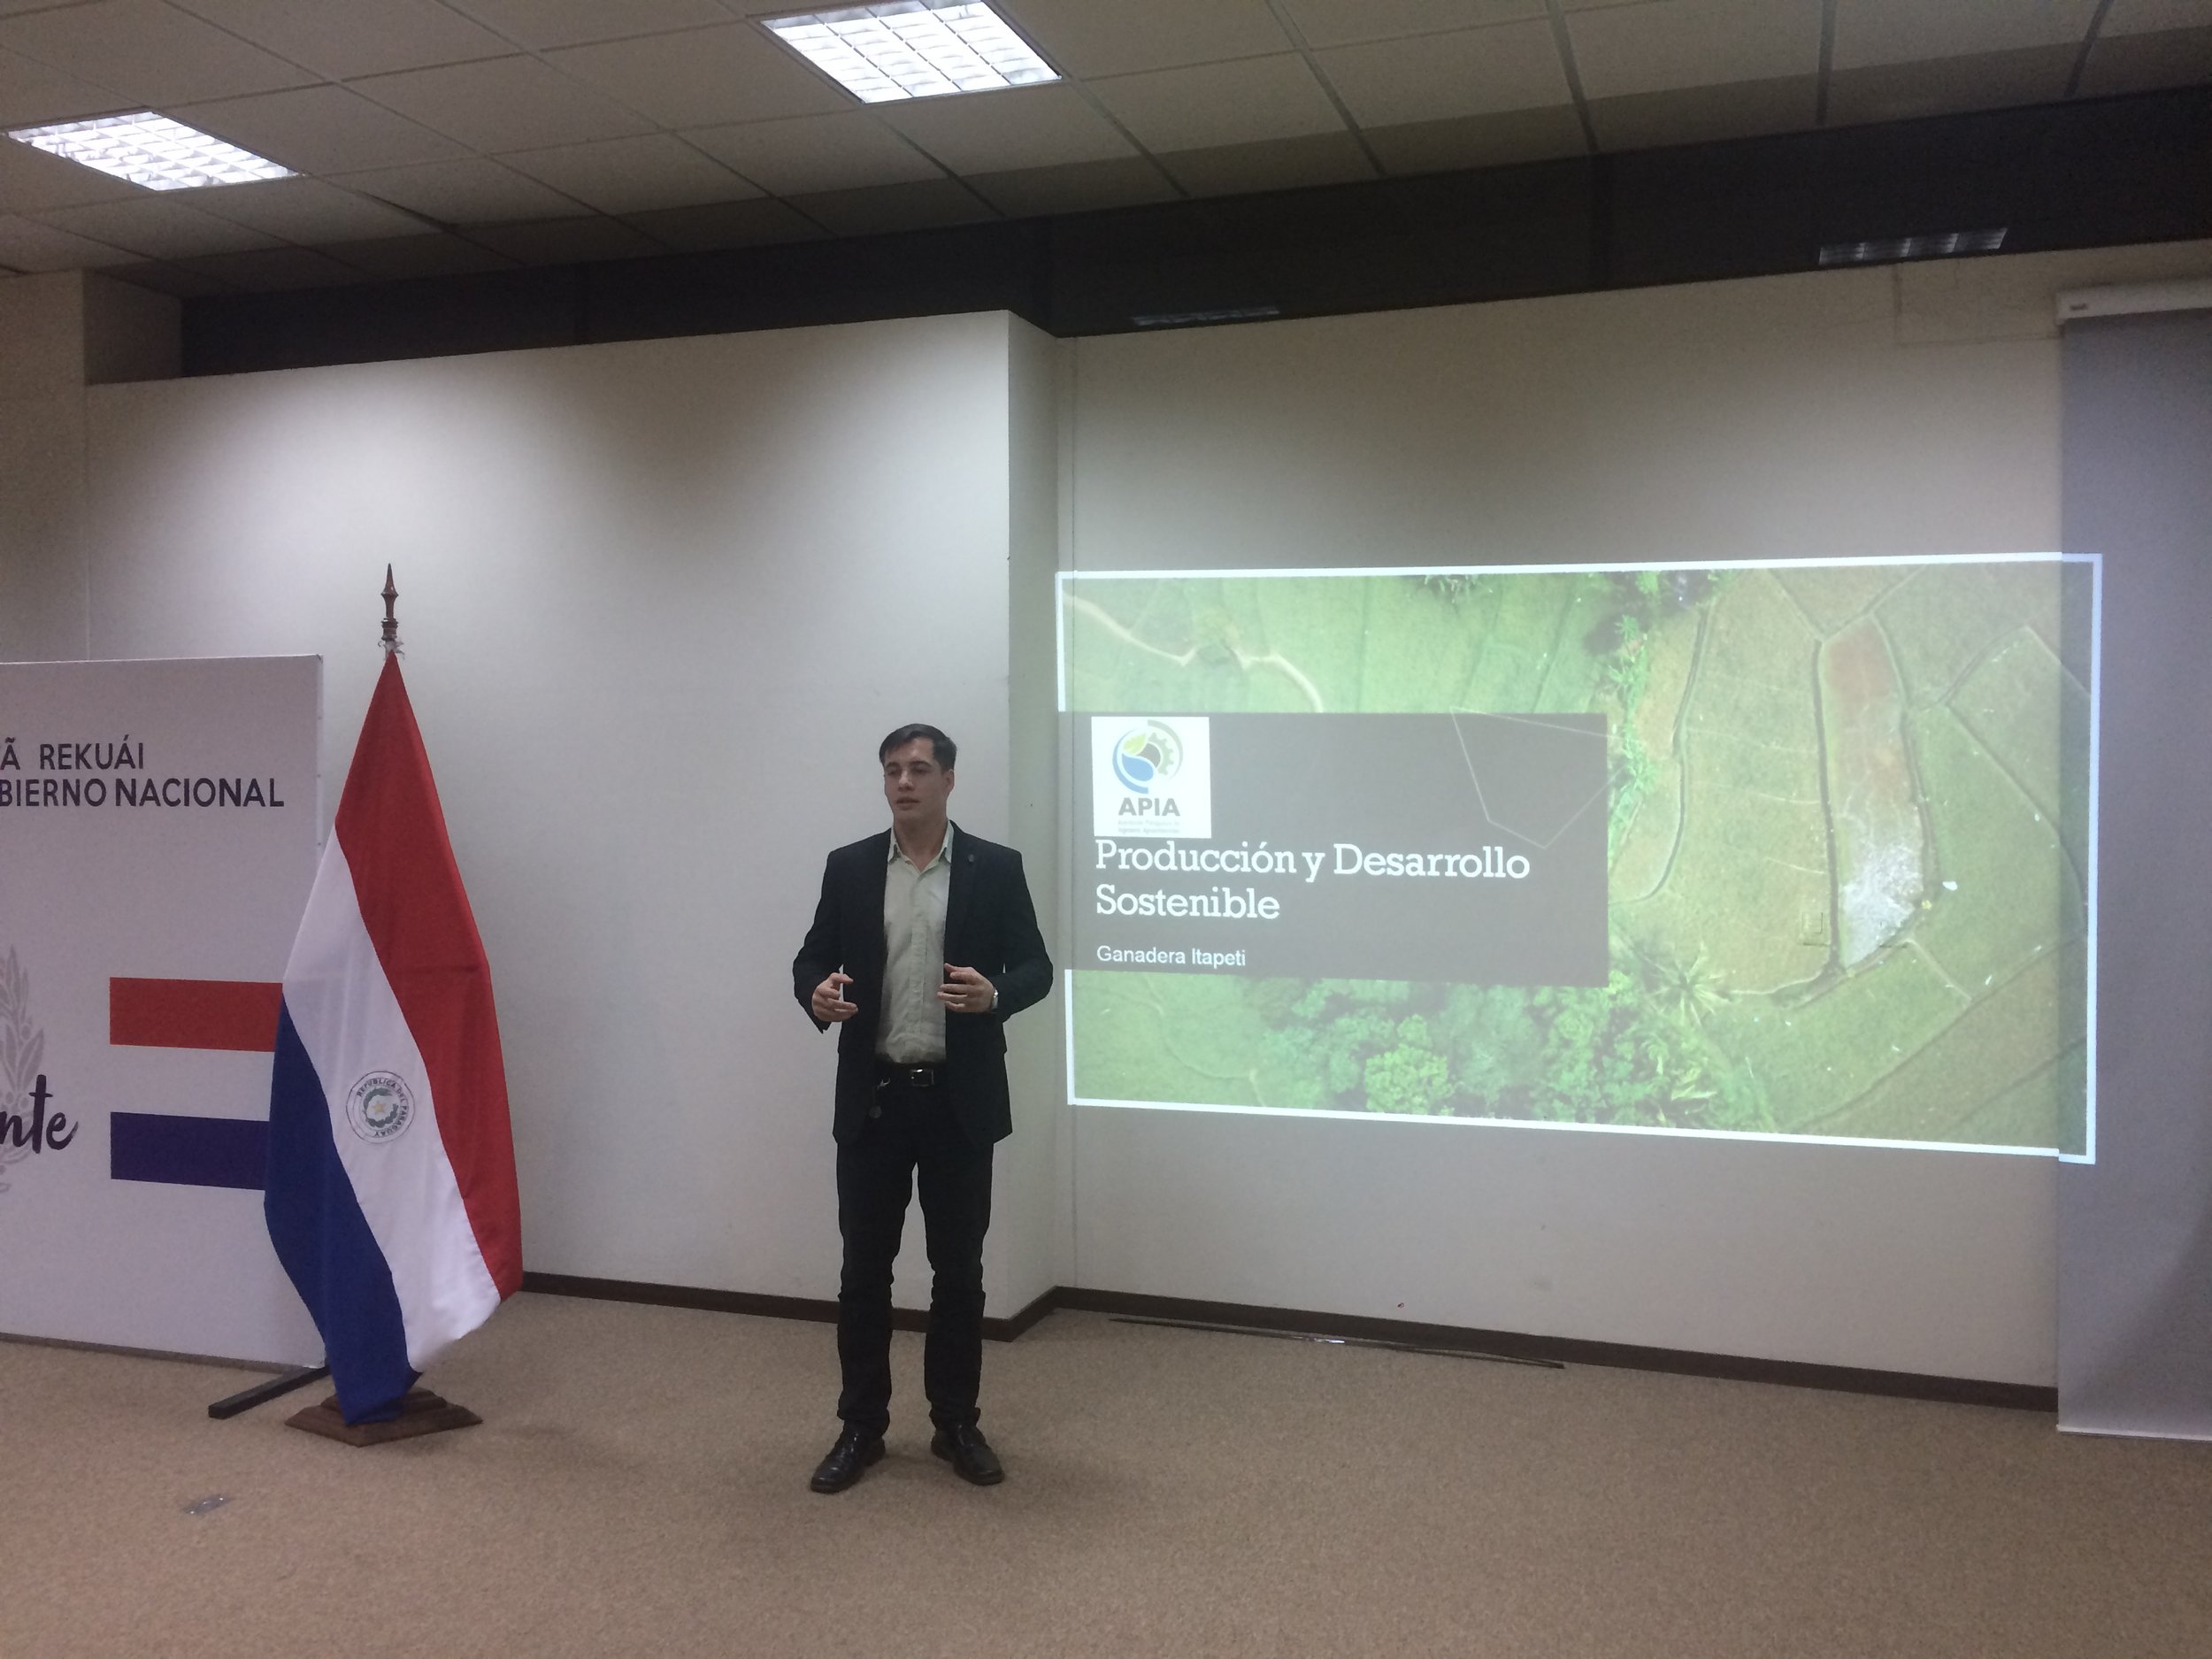  Mayo 2019: Participación en el I Congreso Paraguayo de Áreas Silvestres Protegidas como miembro del Staff y disertación con el tema Producción y Desarrollo Sostenible, realizado en el Ministerio del Ambiente y Desarrollo Sostenible (MADES), Asunción